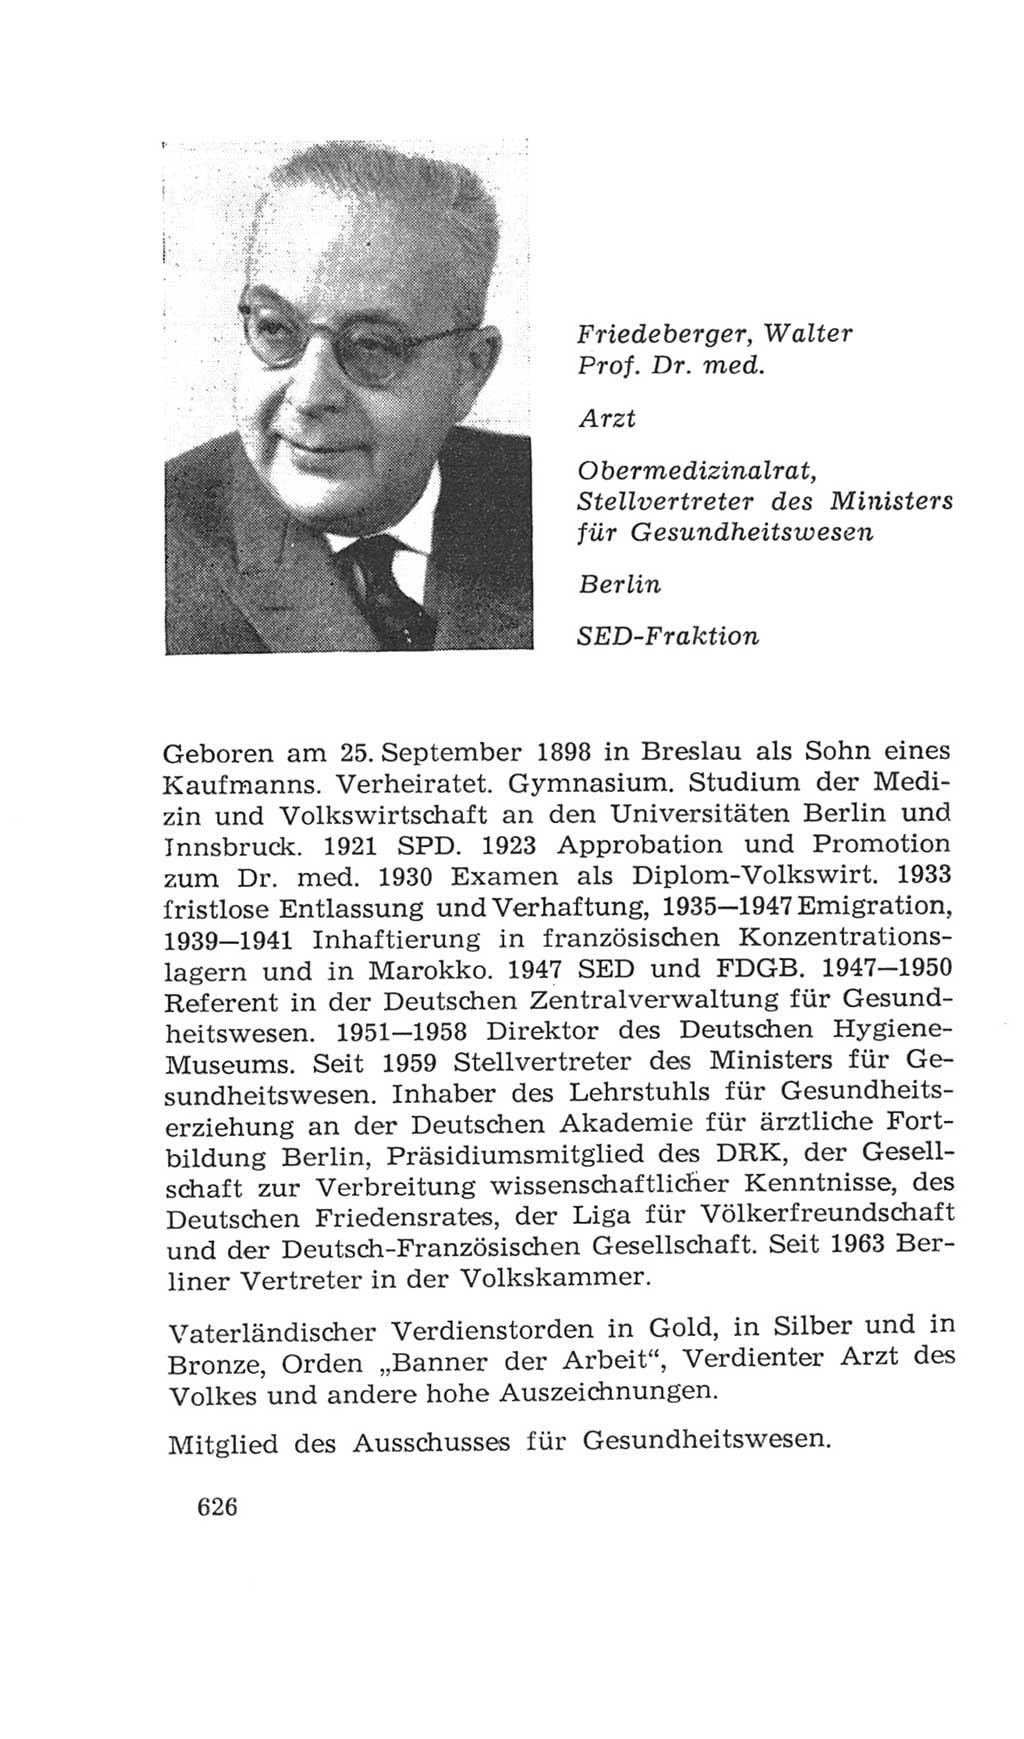 Volkskammer (VK) der Deutschen Demokratischen Republik (DDR), 4. Wahlperiode 1963-1967, Seite 626 (VK. DDR 4. WP. 1963-1967, S. 626)